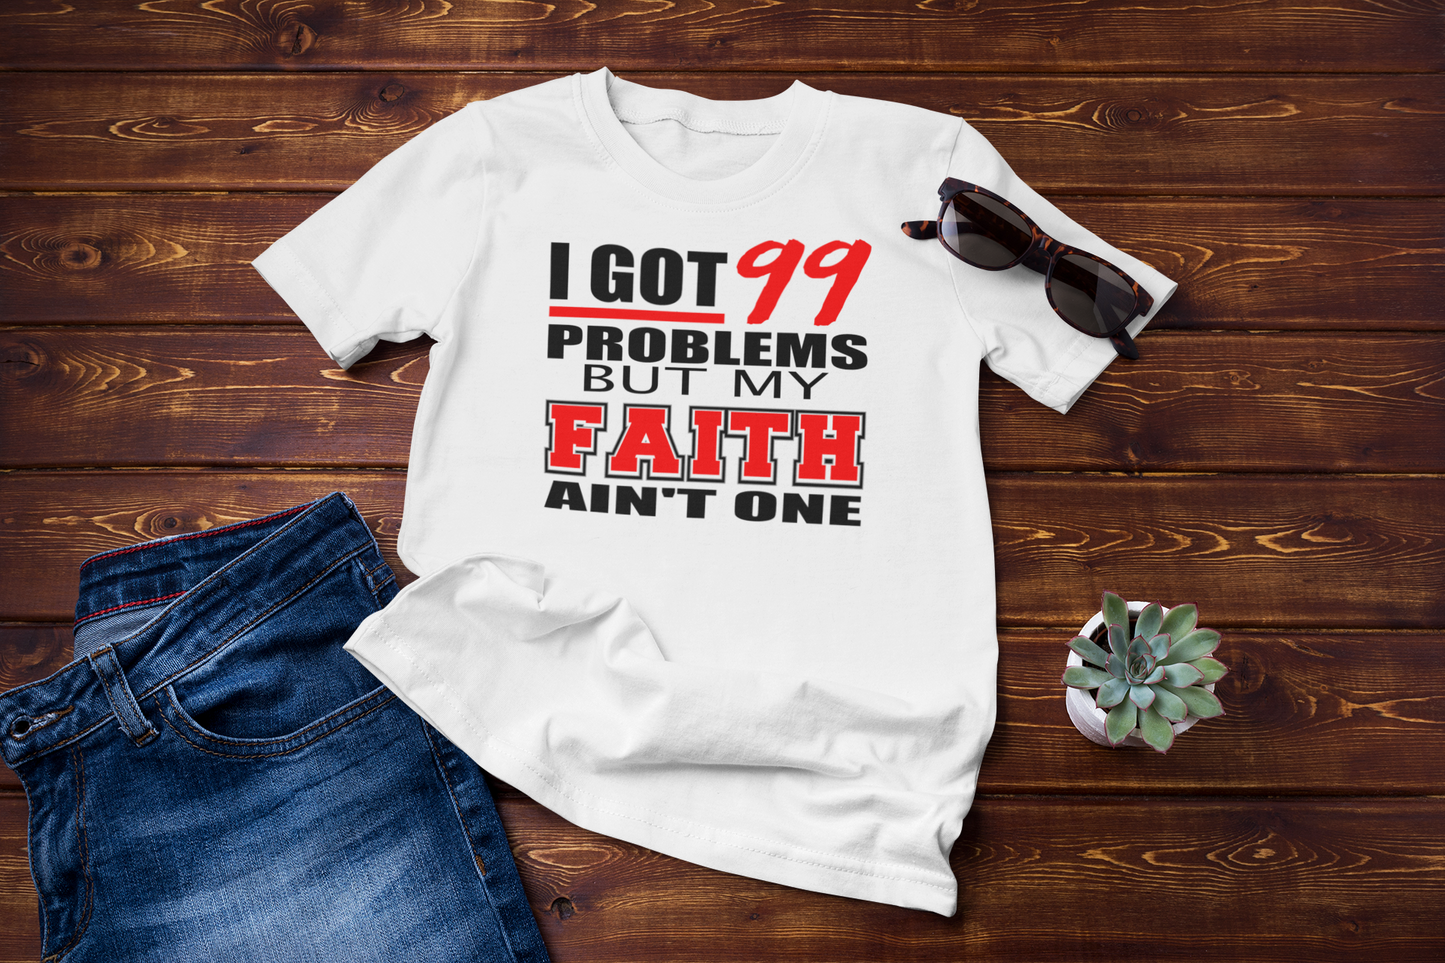 I Got 99 Problems but my FAITH ain't one